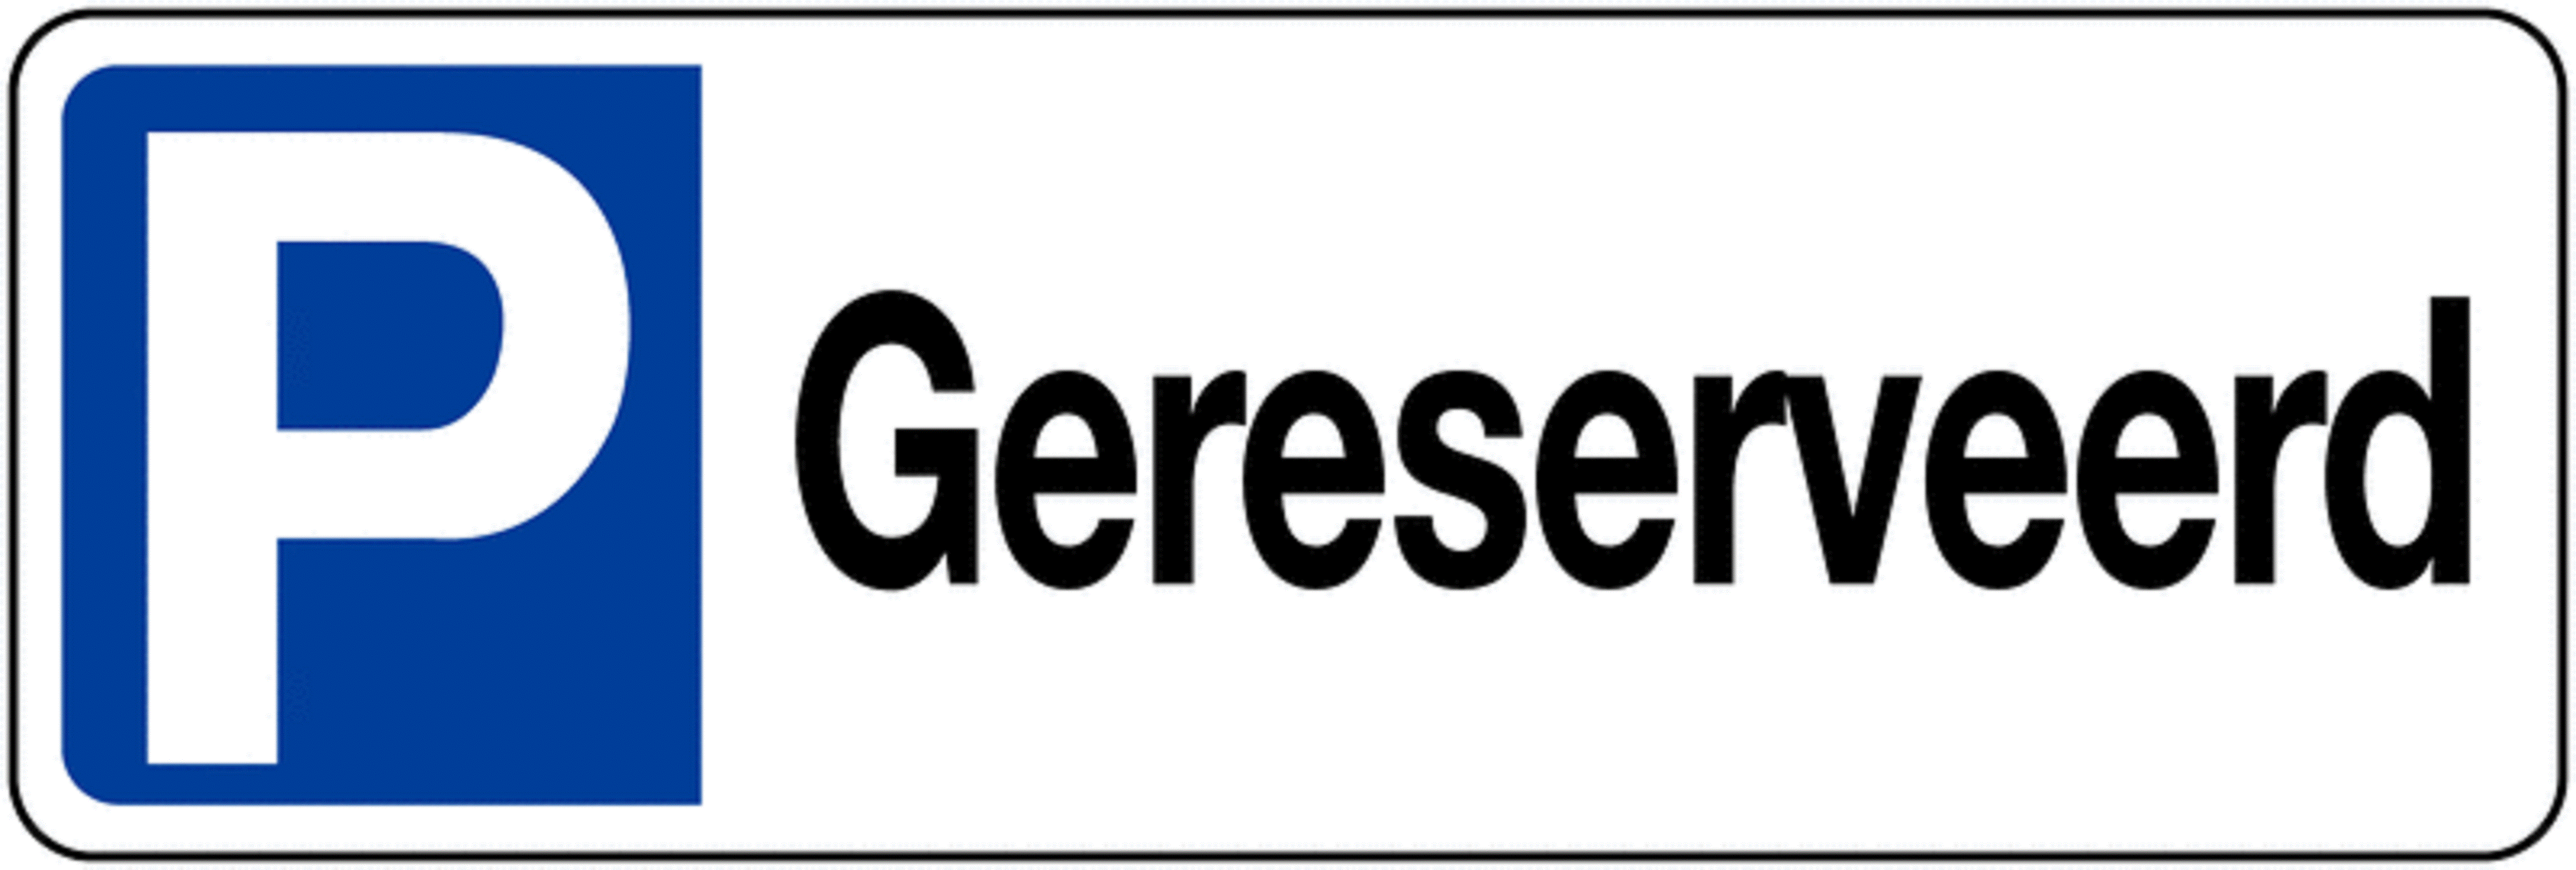 Geperst bordje - P gereserveerd - 52x11cm